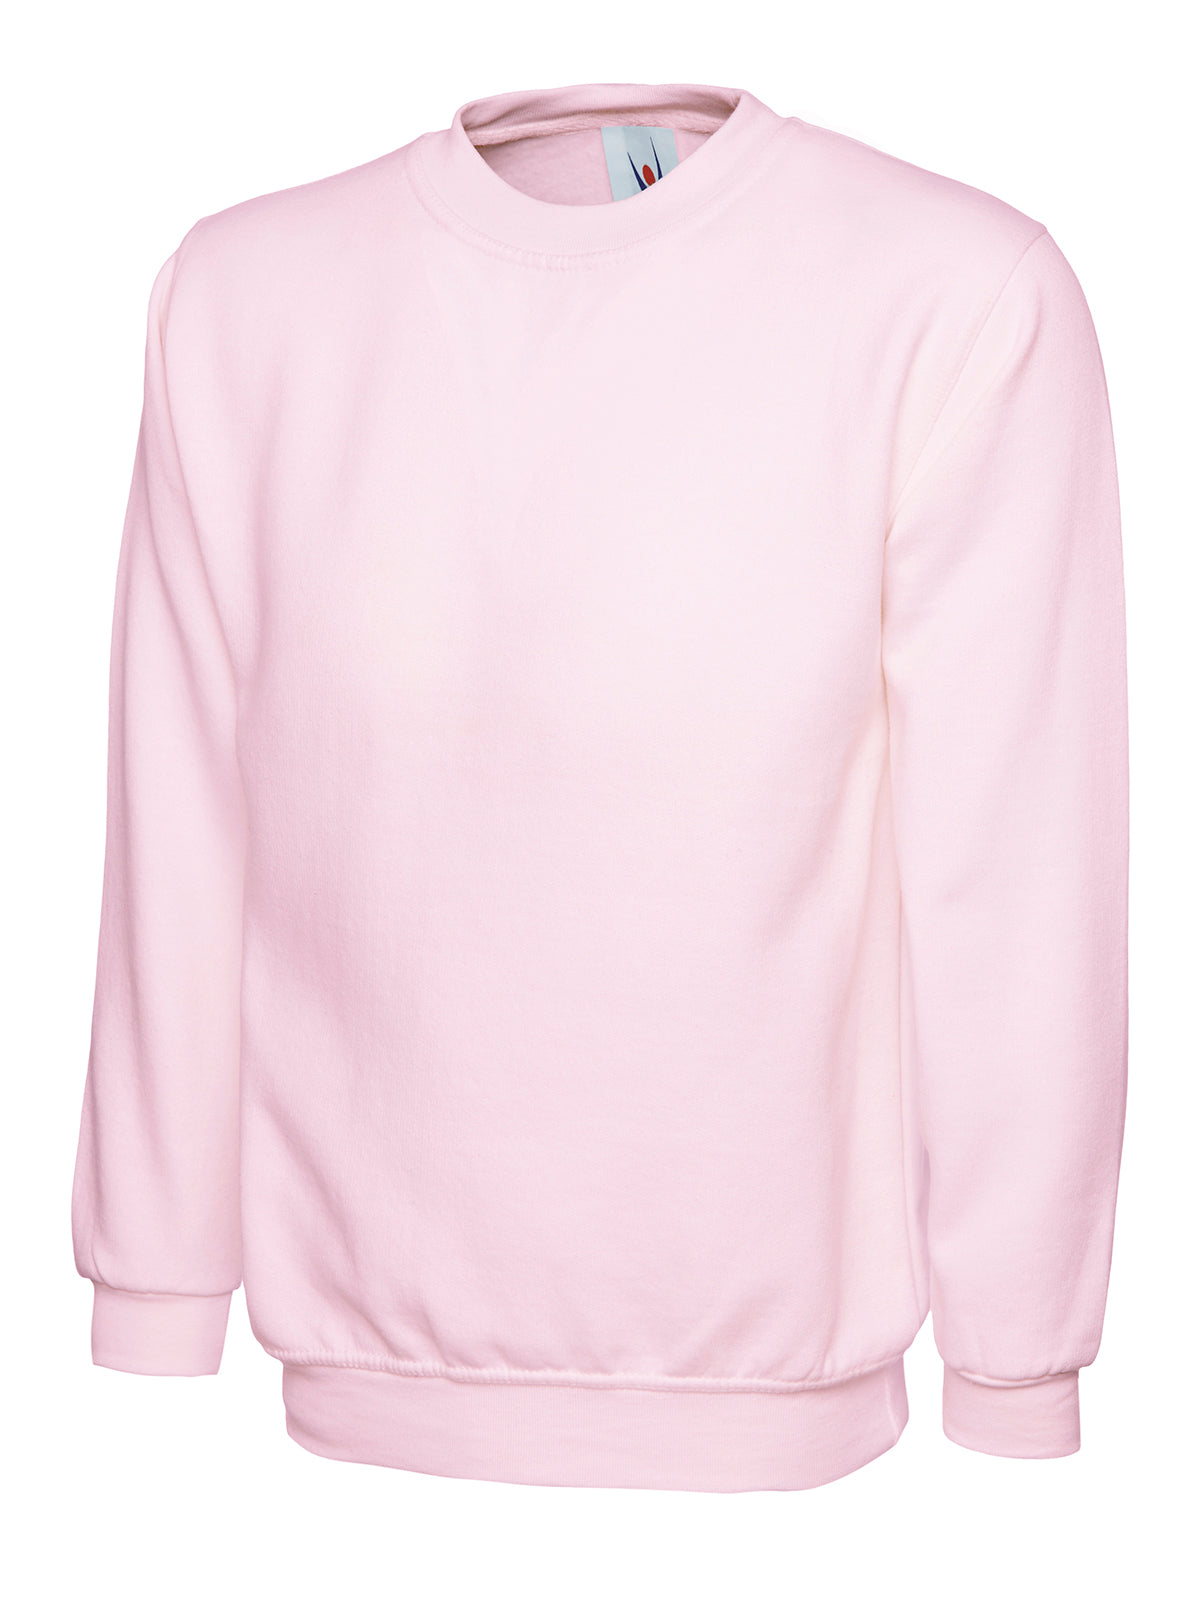 Uneek Ladies Deluxe Crew Neck Sweatshirt UC511 - Pink